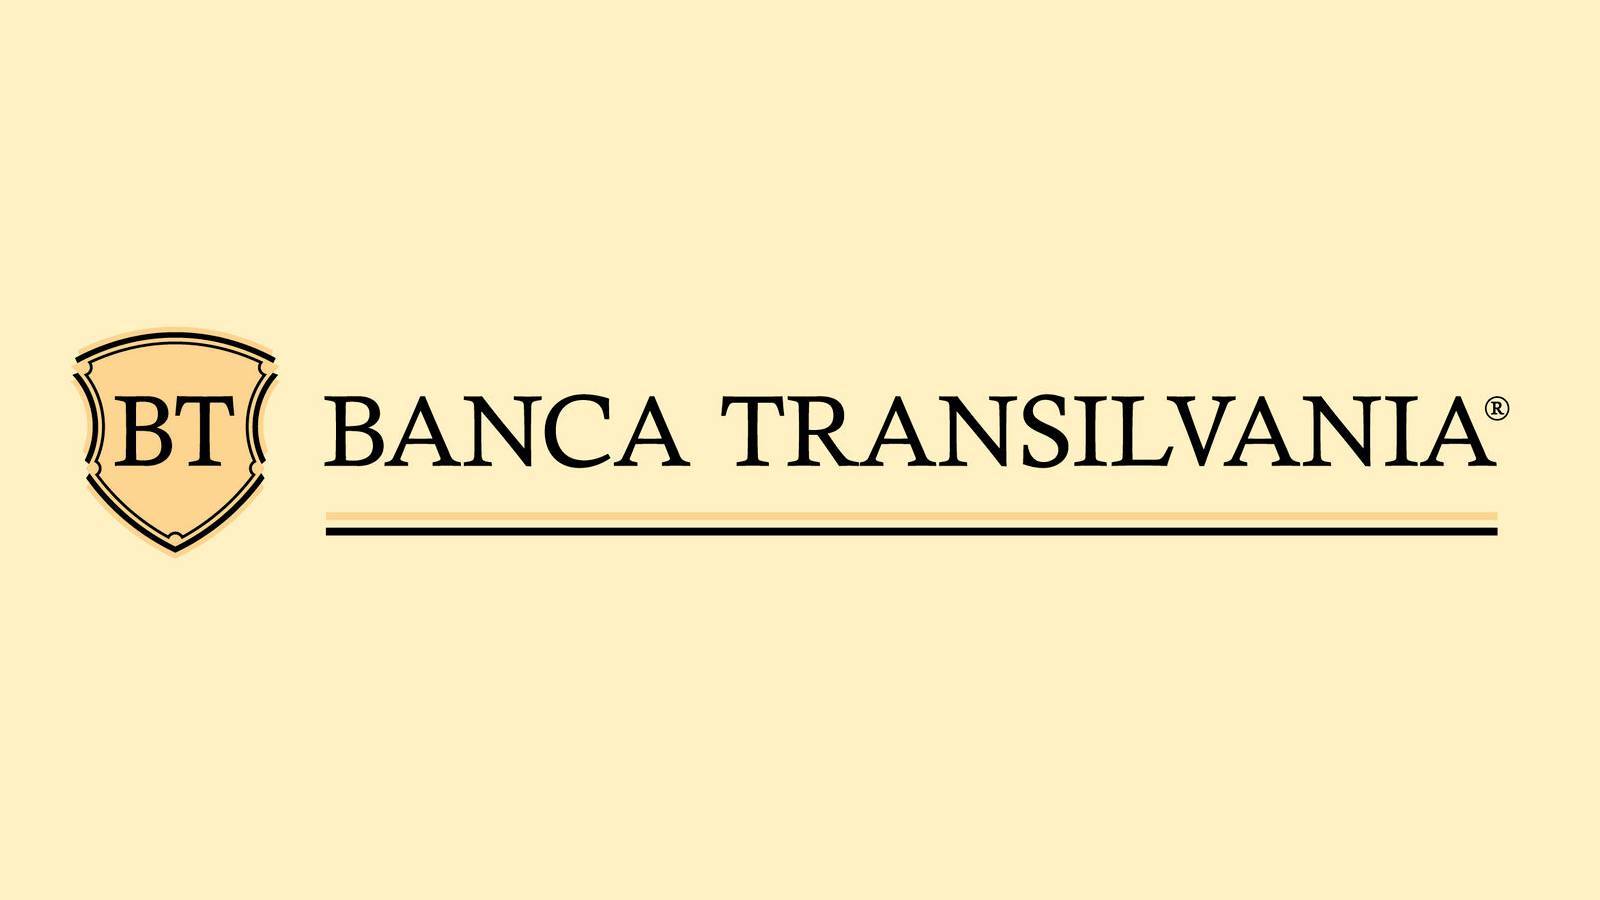 Oficjalne zmiany BANCA Transilvania dokonane w LAST MINUTE Klienci w CAŁEJ Rumunii